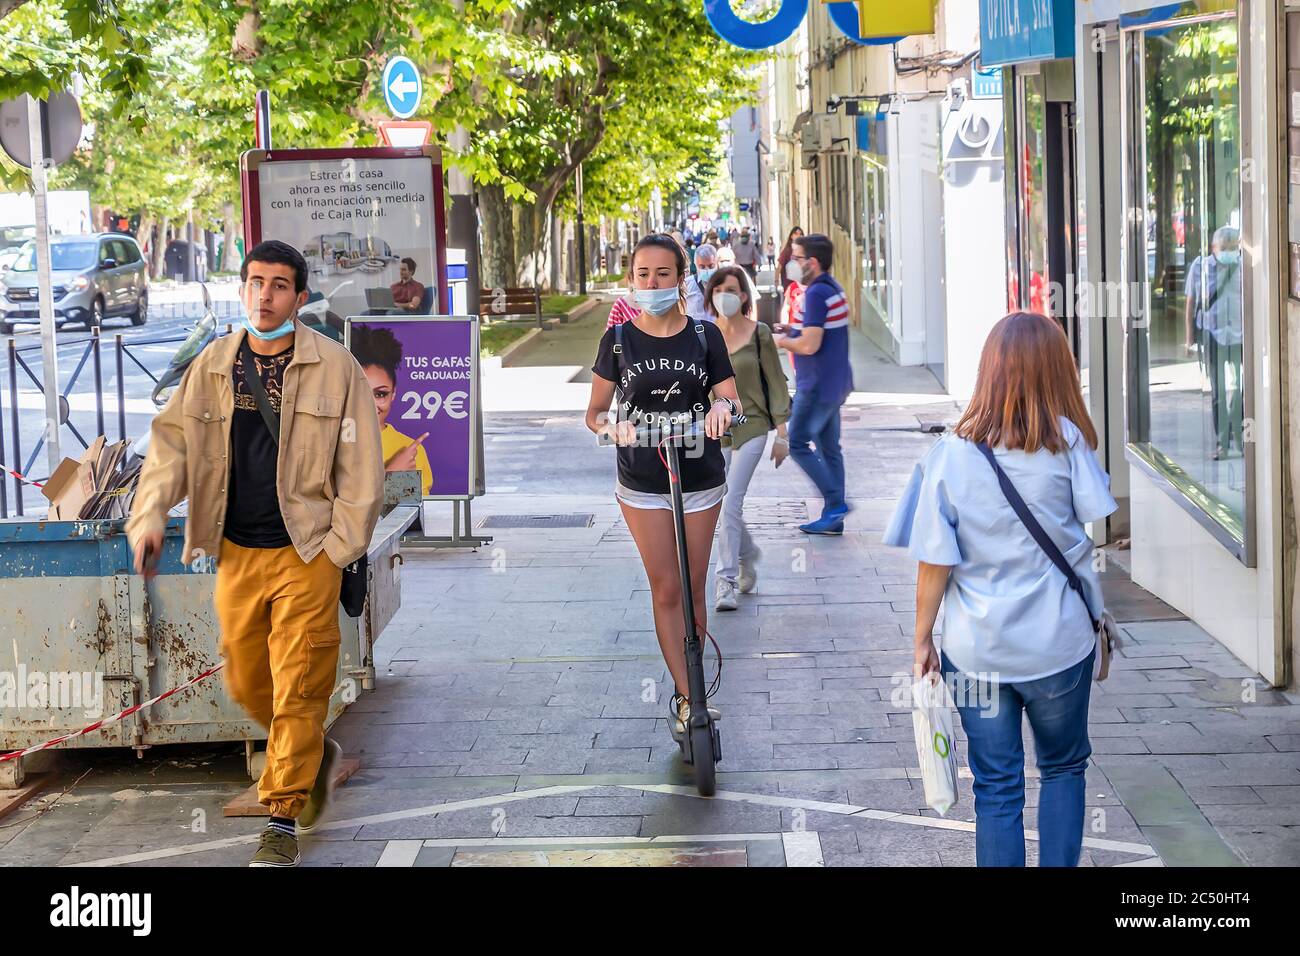 Jaen, Spagna - 18 giugno 2020: Giovane donna che cavalca uno scooter elettrico sul marciapiede indossando una maschera protettiva. Foto Stock